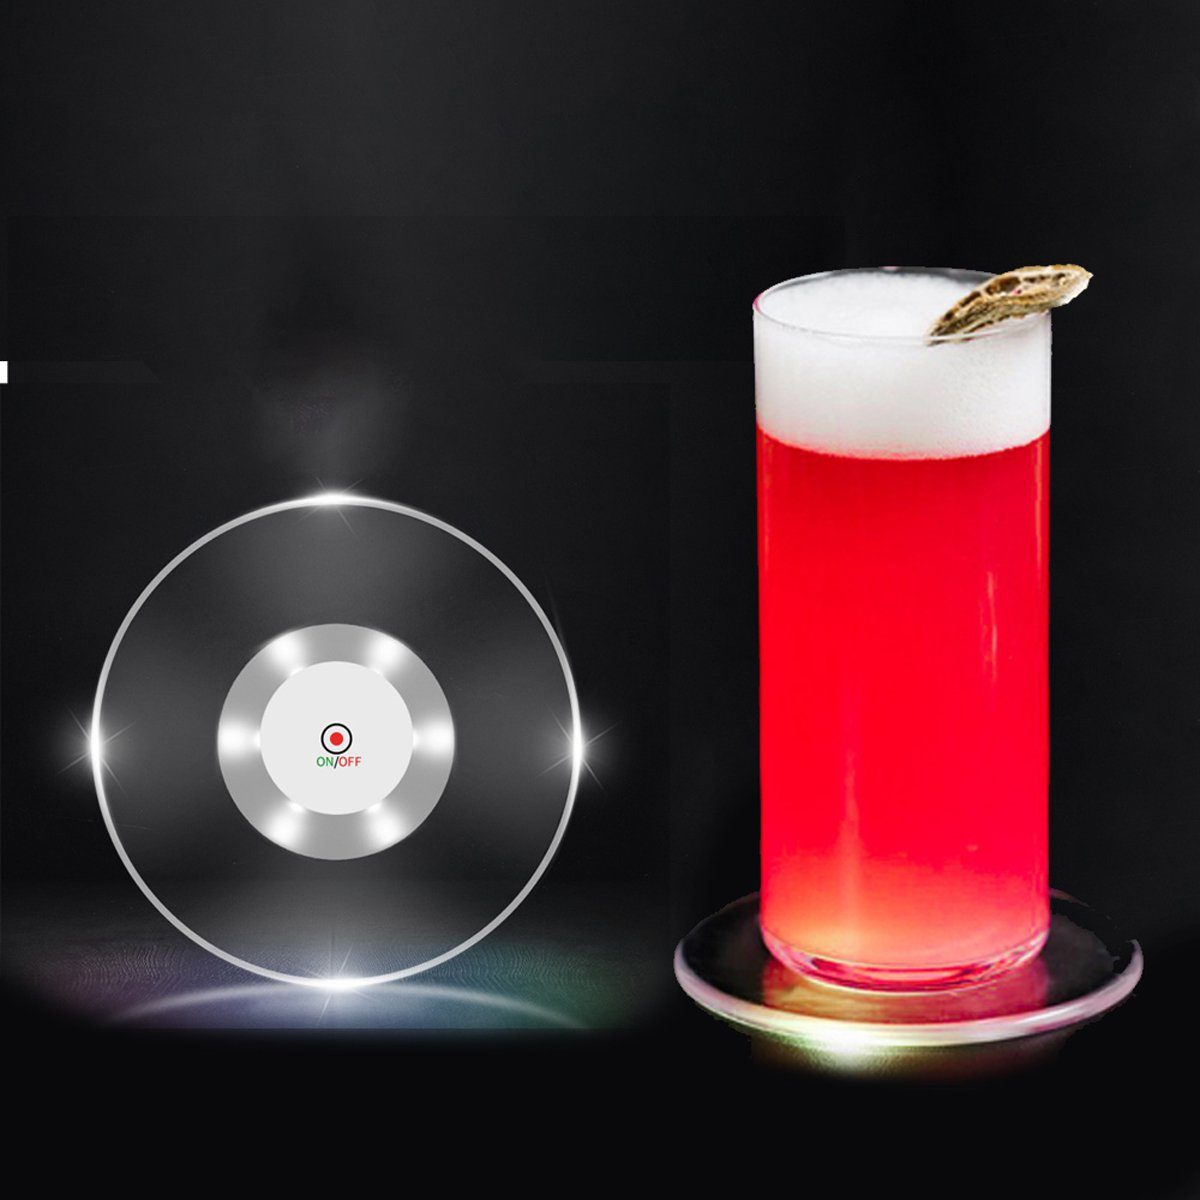 Jormftte Glasuntersetzer Bunt LED Leuchte Untersetzer für Partys Hochzeiten Bar Weihnachten Transparent2